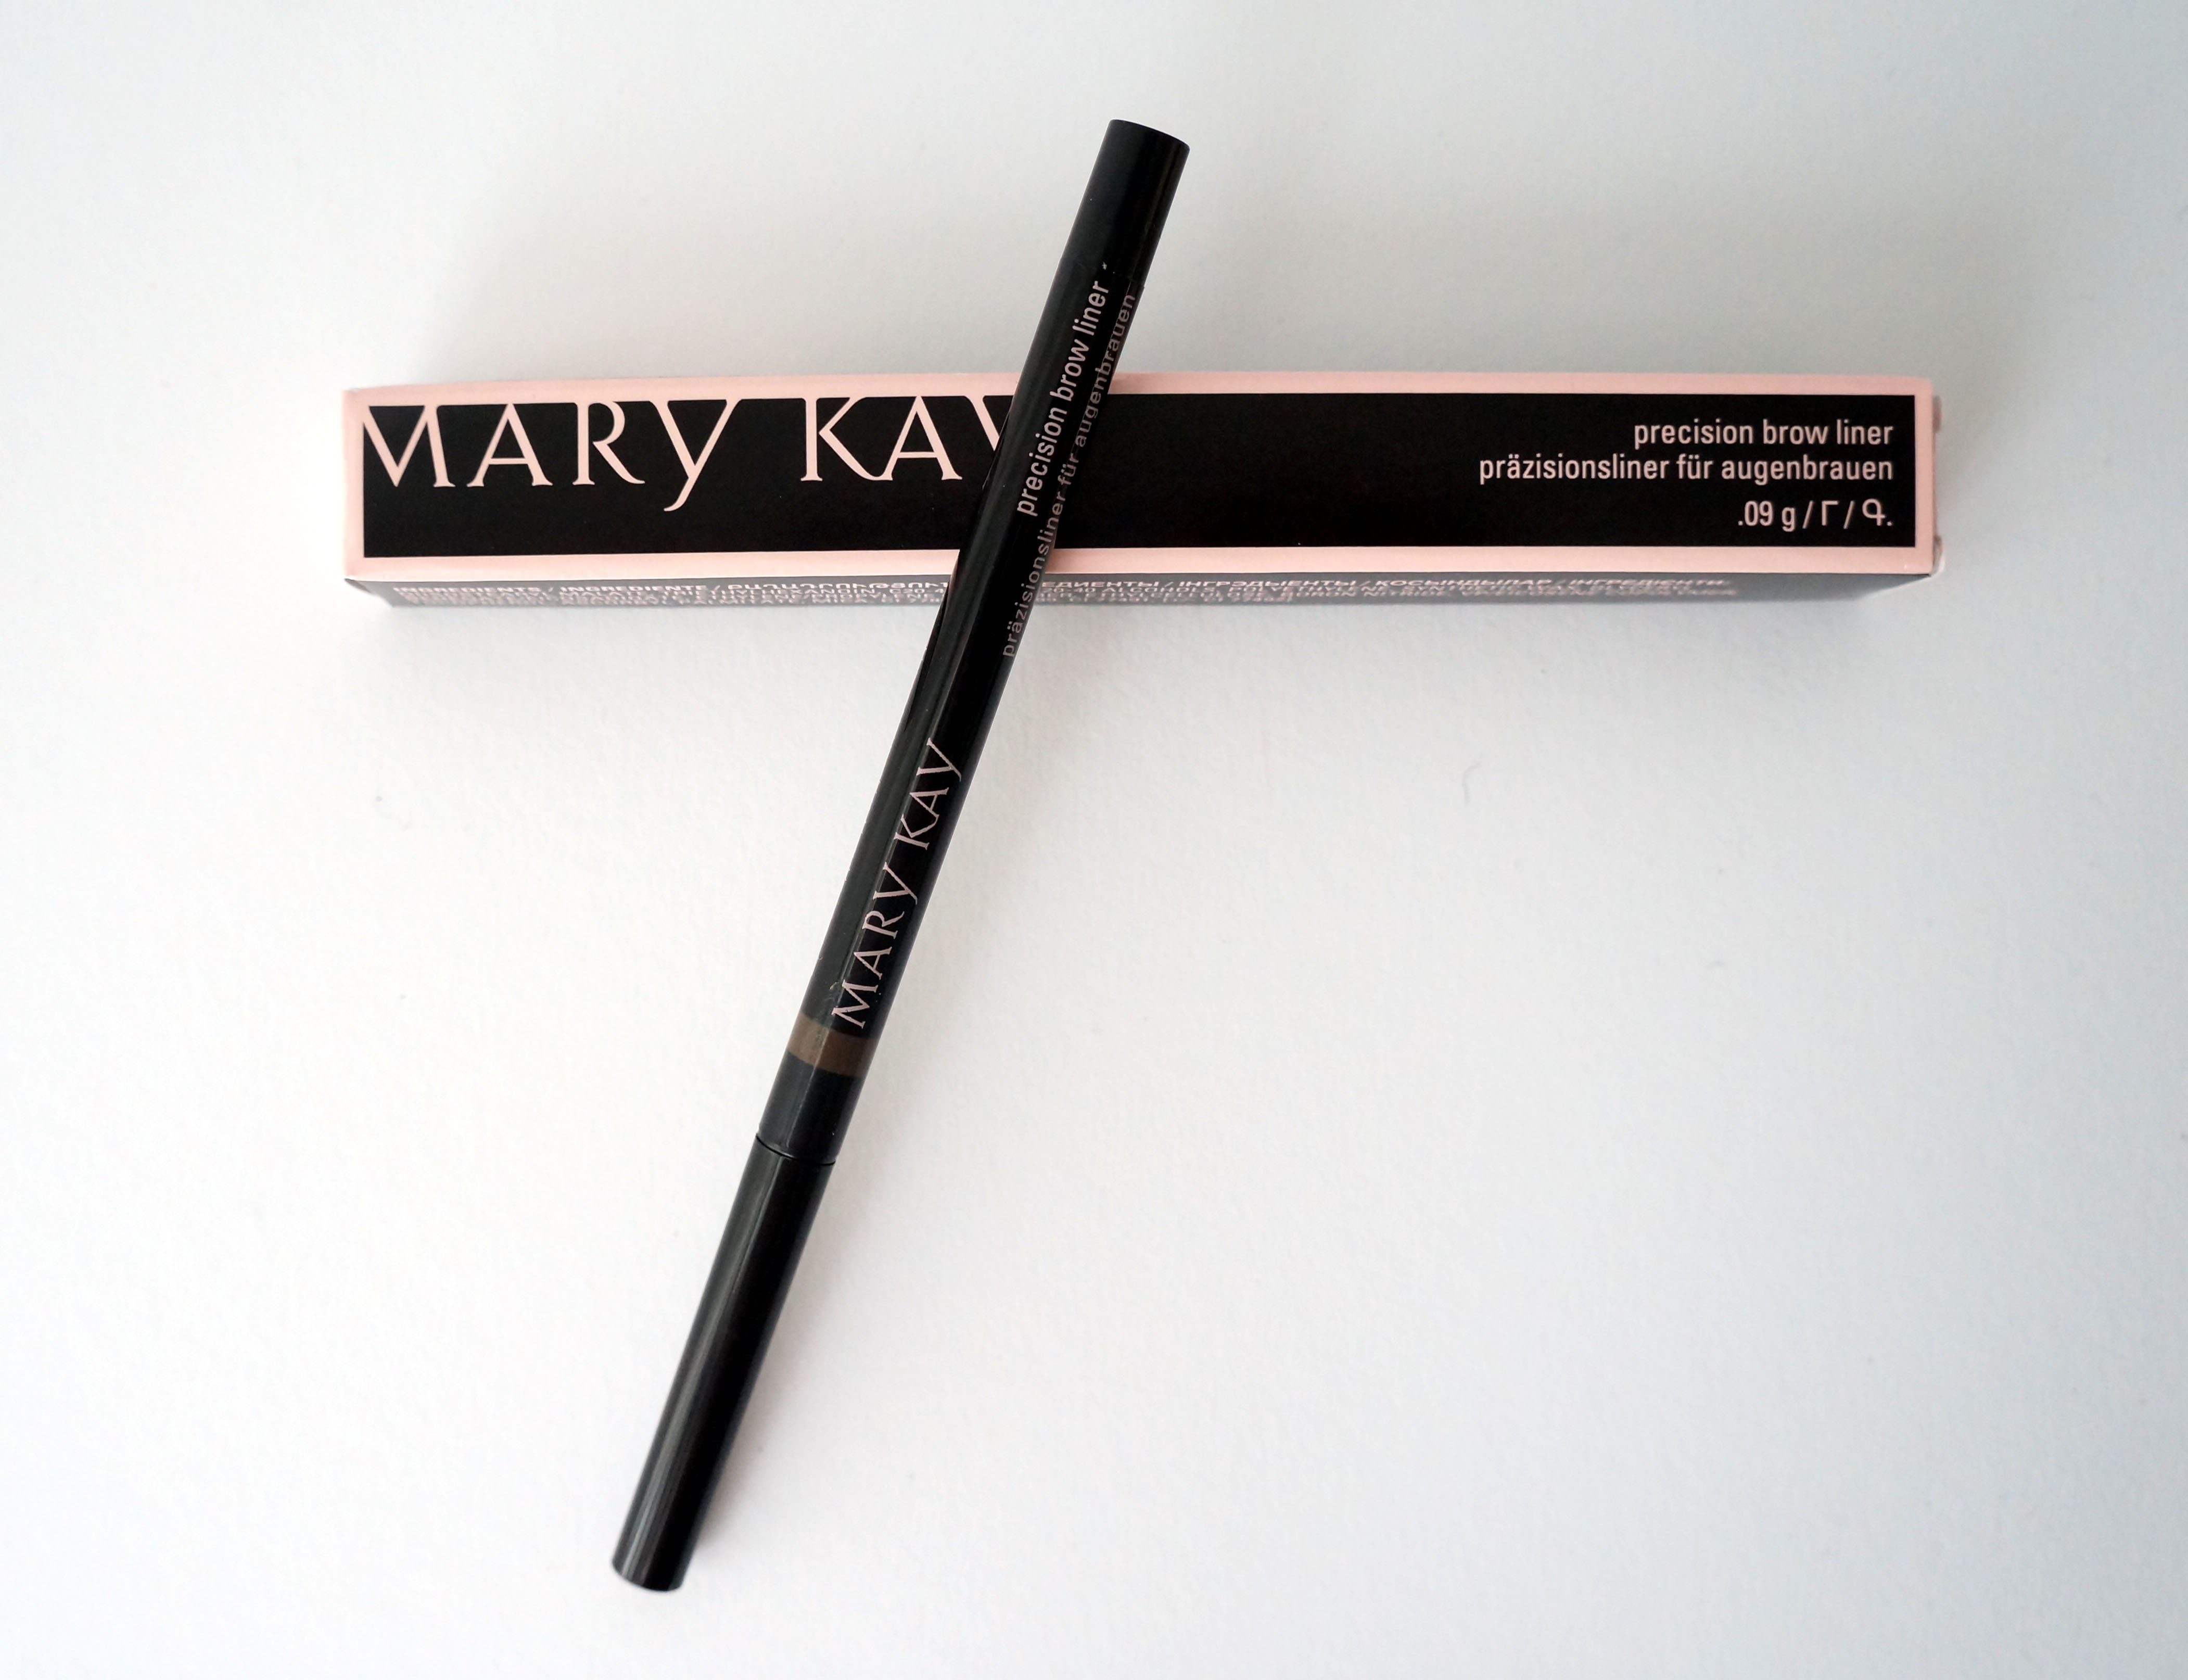 Mary Kay Augenbrauen-Stift Precision brow liner präzisionsliner für Augenbrauen 0,09g